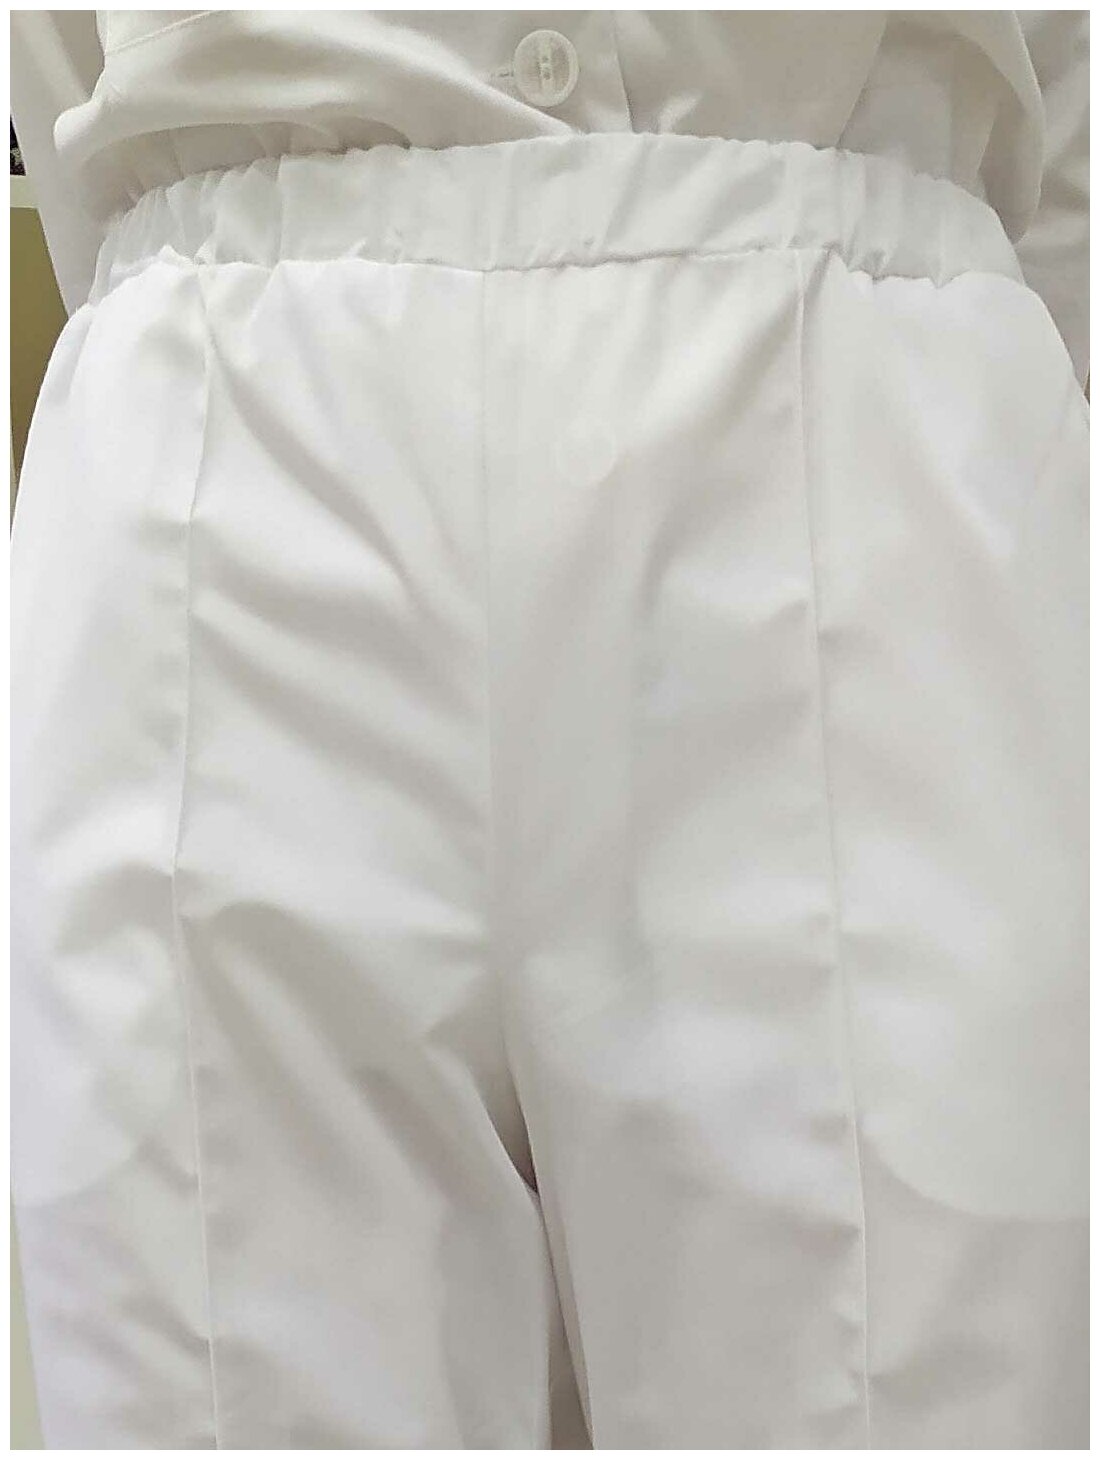 Брюки женские, производитель Фабрика швейных изделий №3, модель М-135, рост 170, размер 44, цвет белый